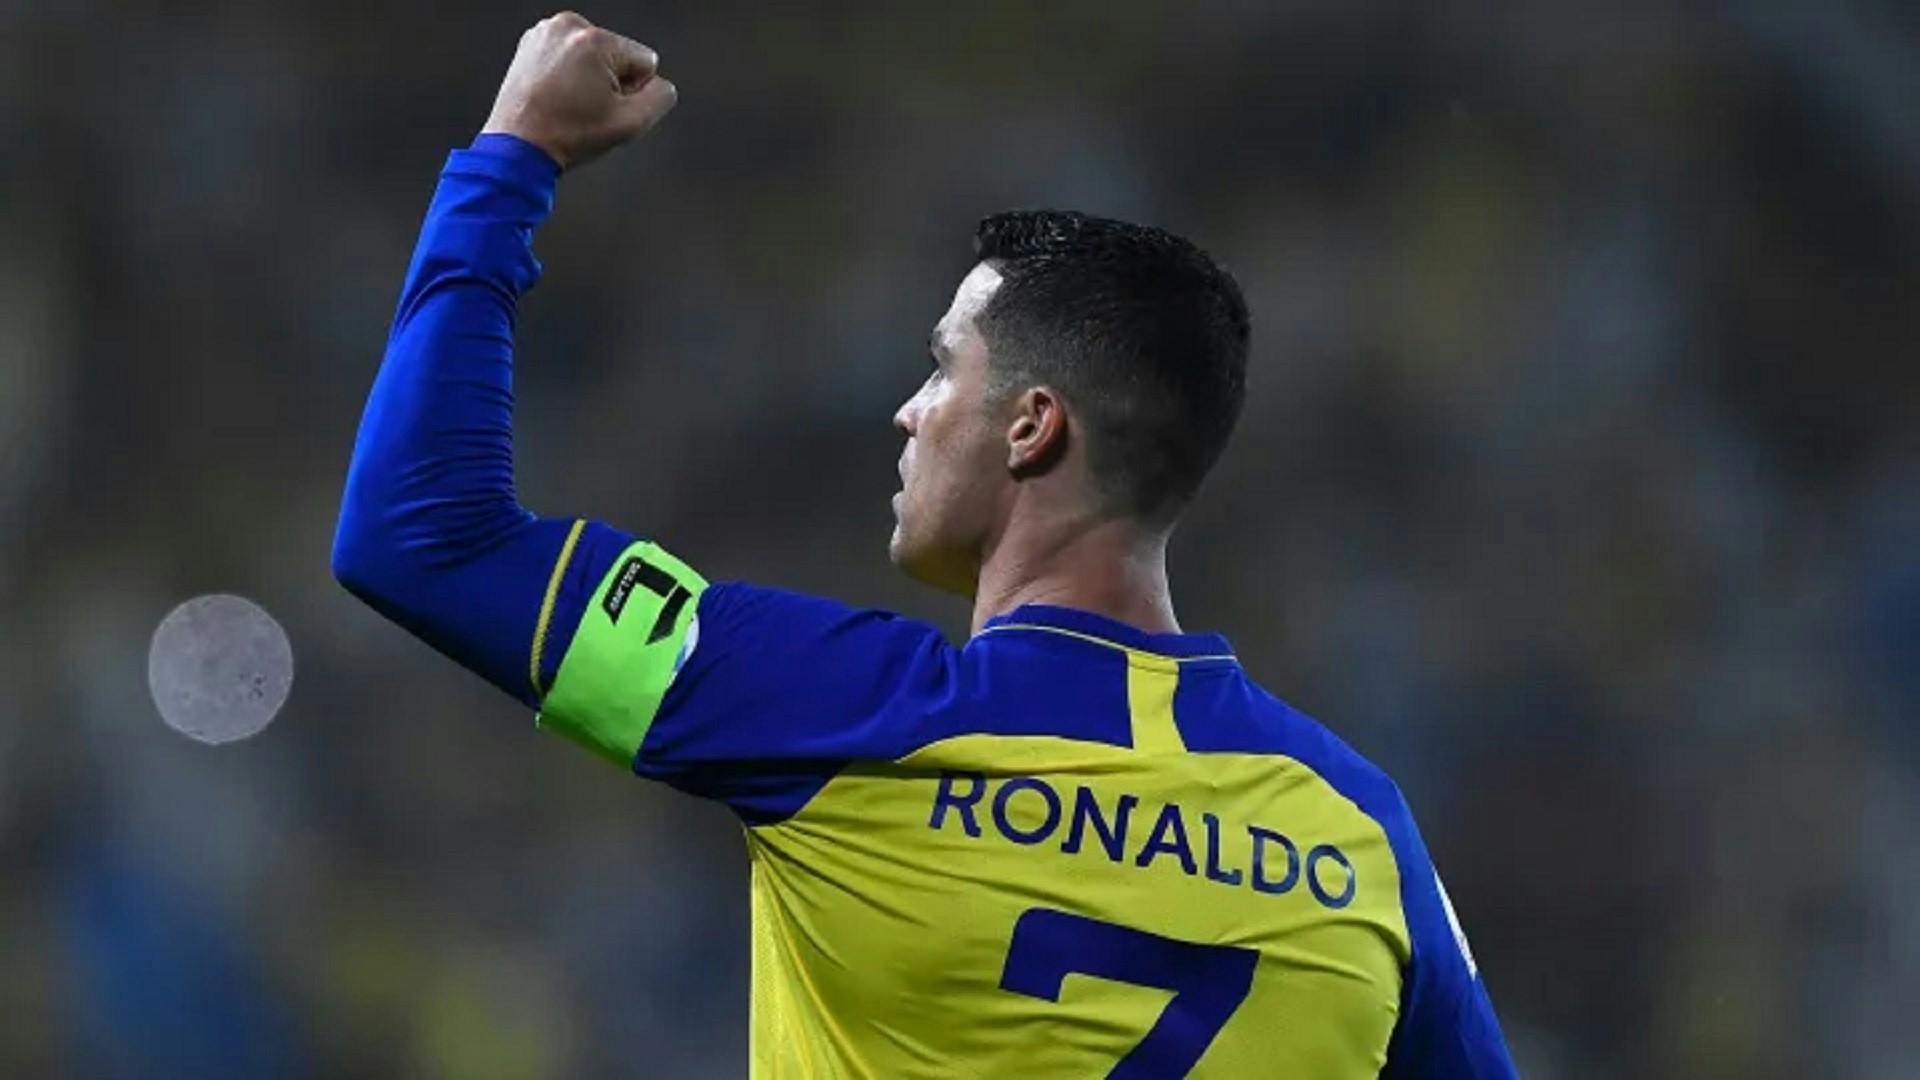 Champions League araba: Cristiano Ronaldo infinito, vince anche questa! (VIDEO)